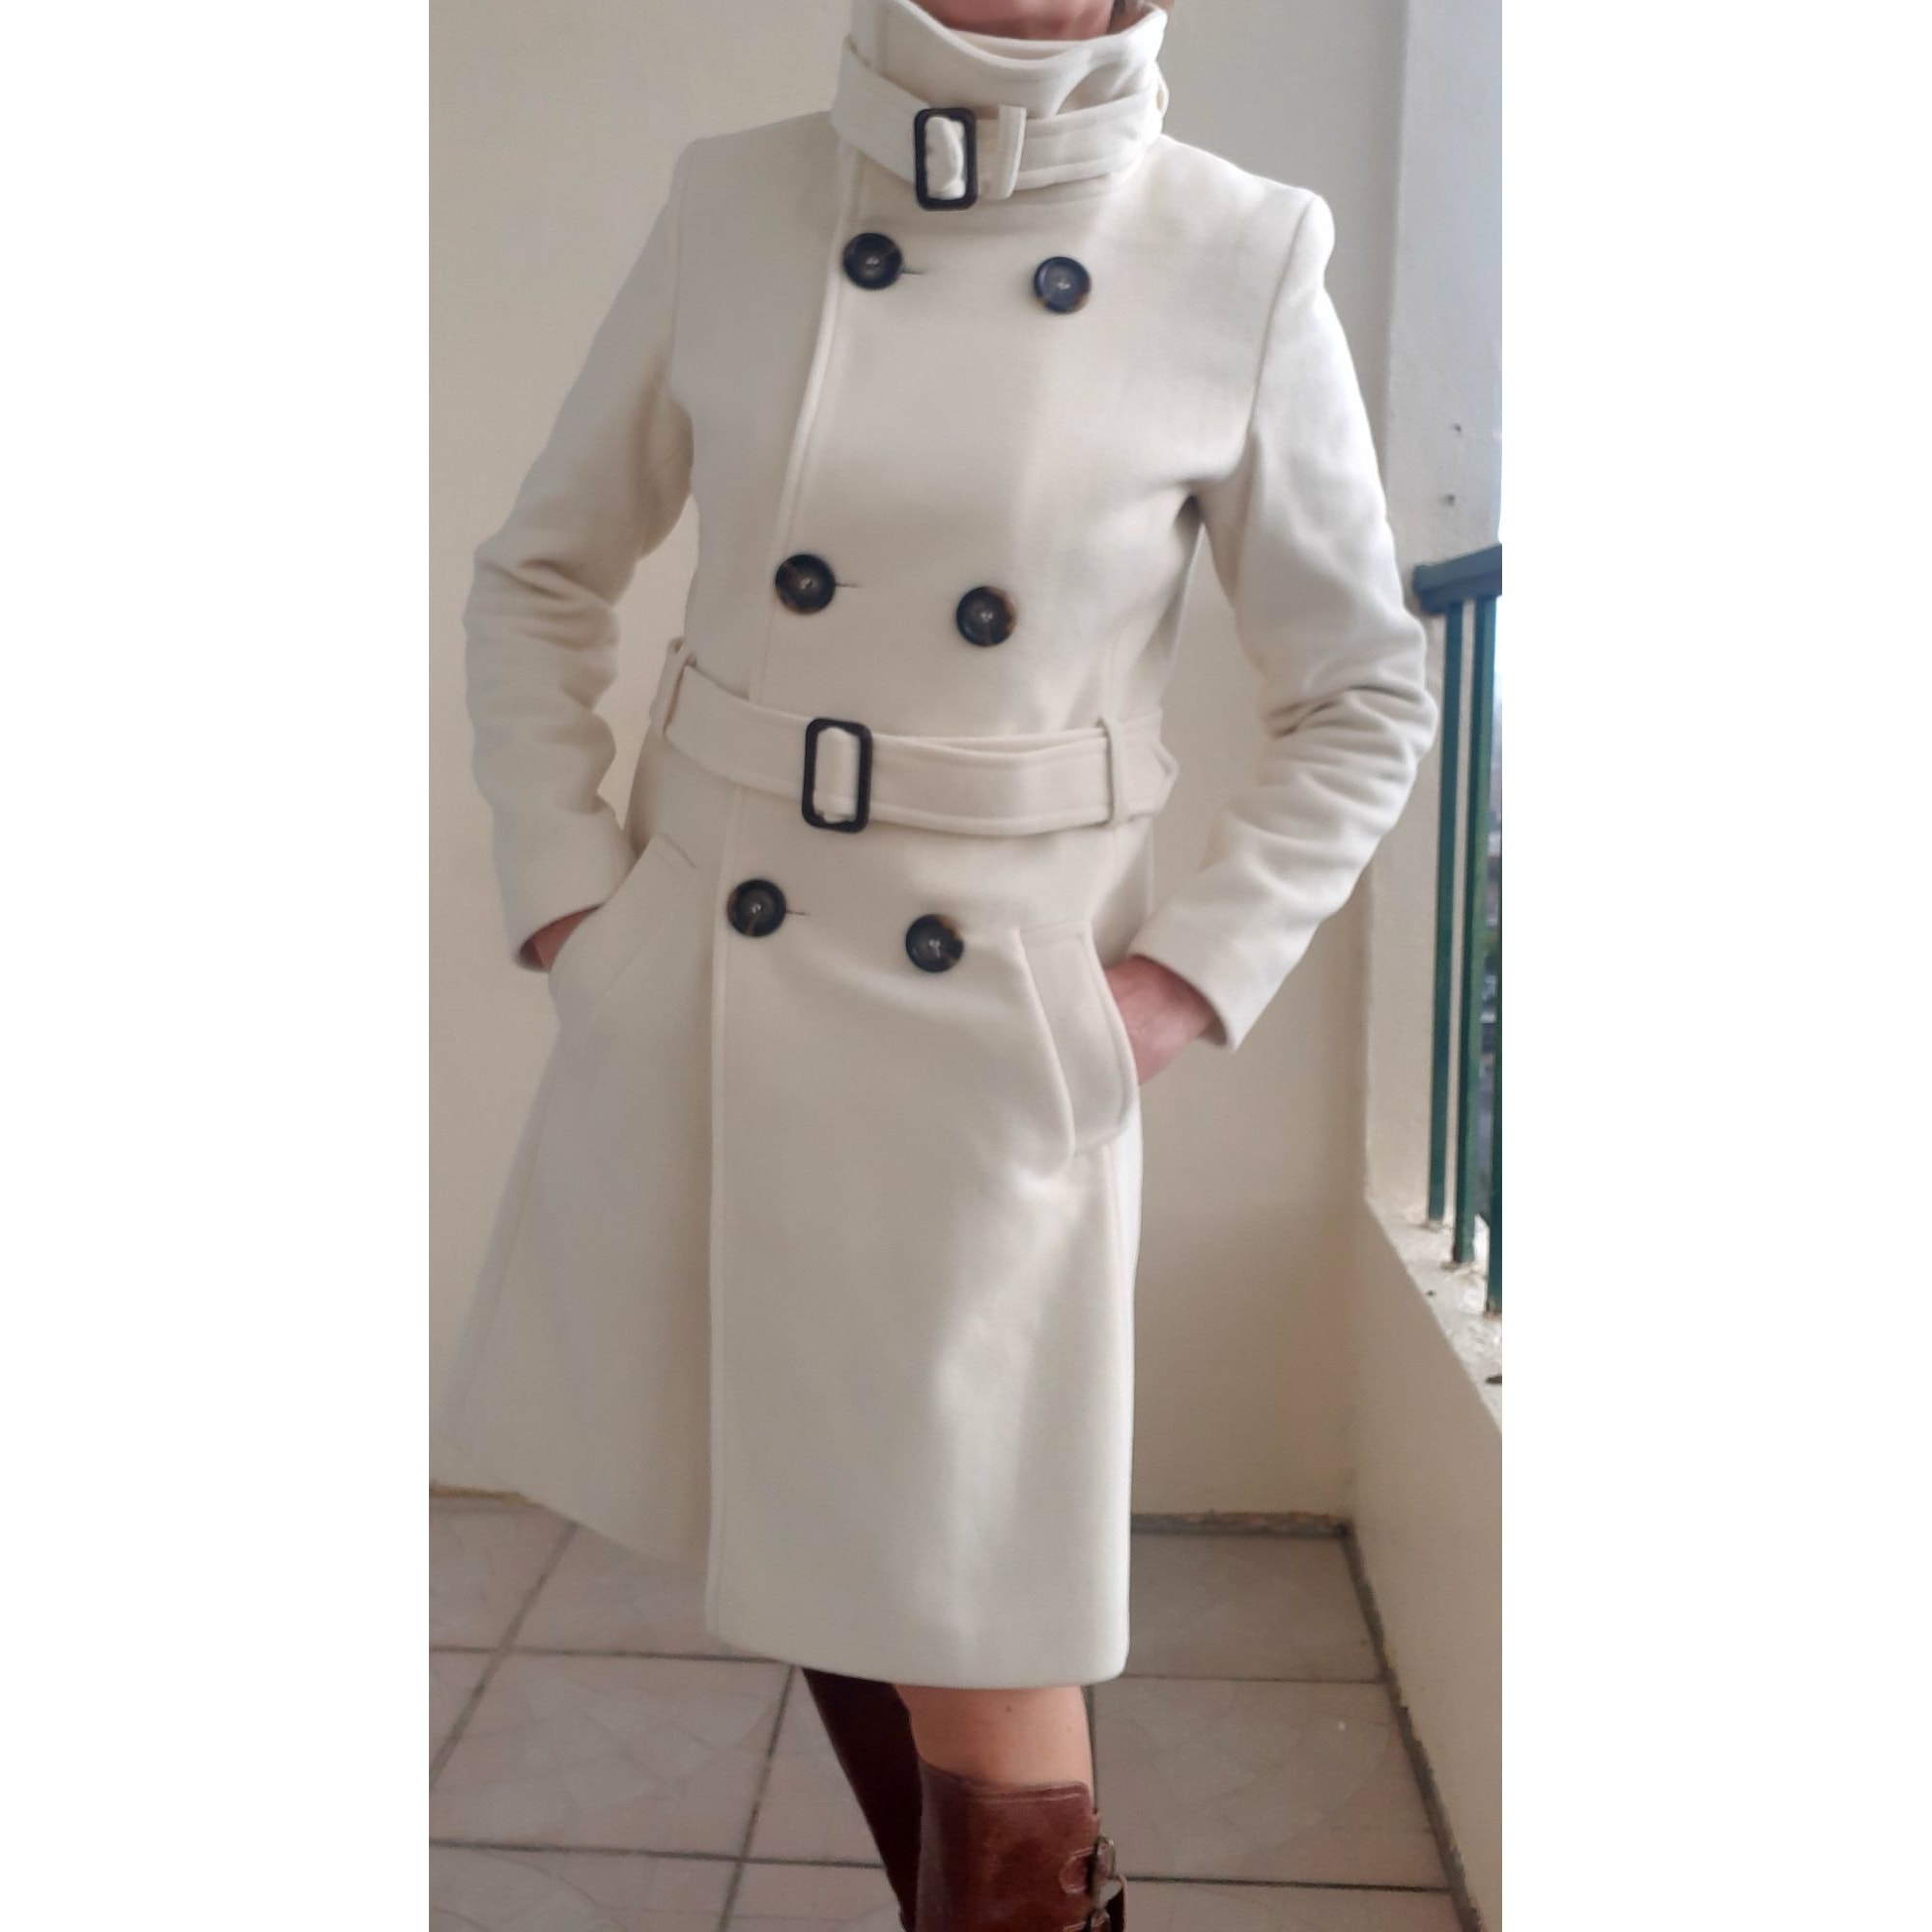 Manteau LAURA CLÉMENT 38 (M, T2) blanc vendu par Lesly16000 - 10791602